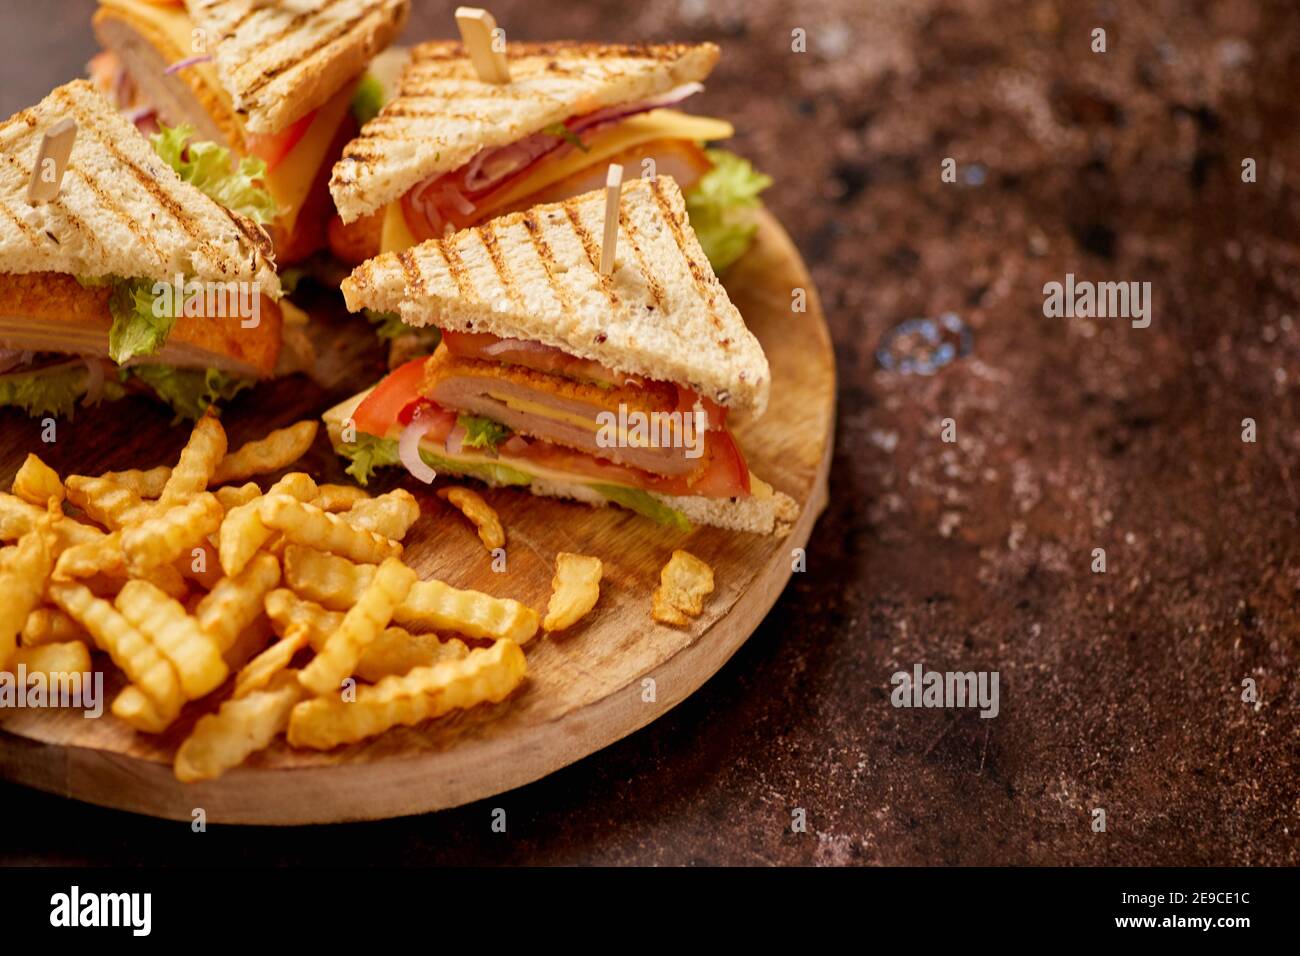 Les sandwichs Club sont servis sur une planche de bois. Avec des frites chaudes Banque D'Images